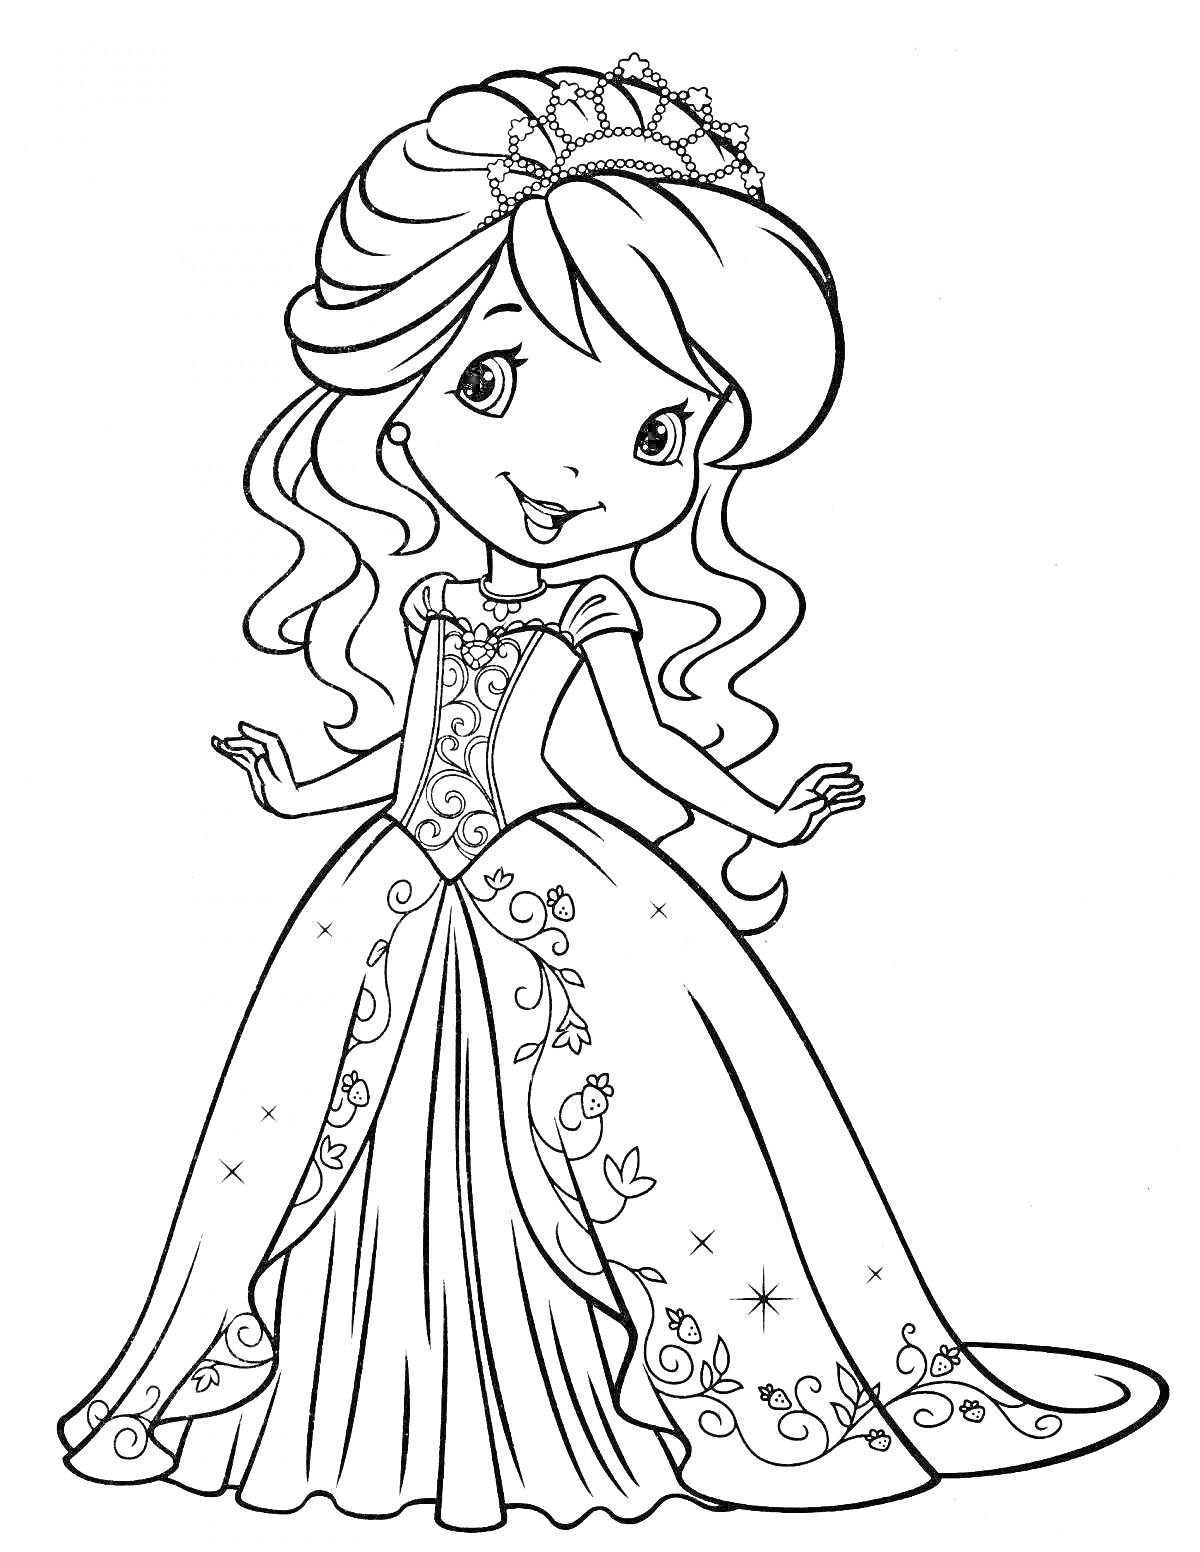 Раскраска Принцесса в роскошном платье с диадемой